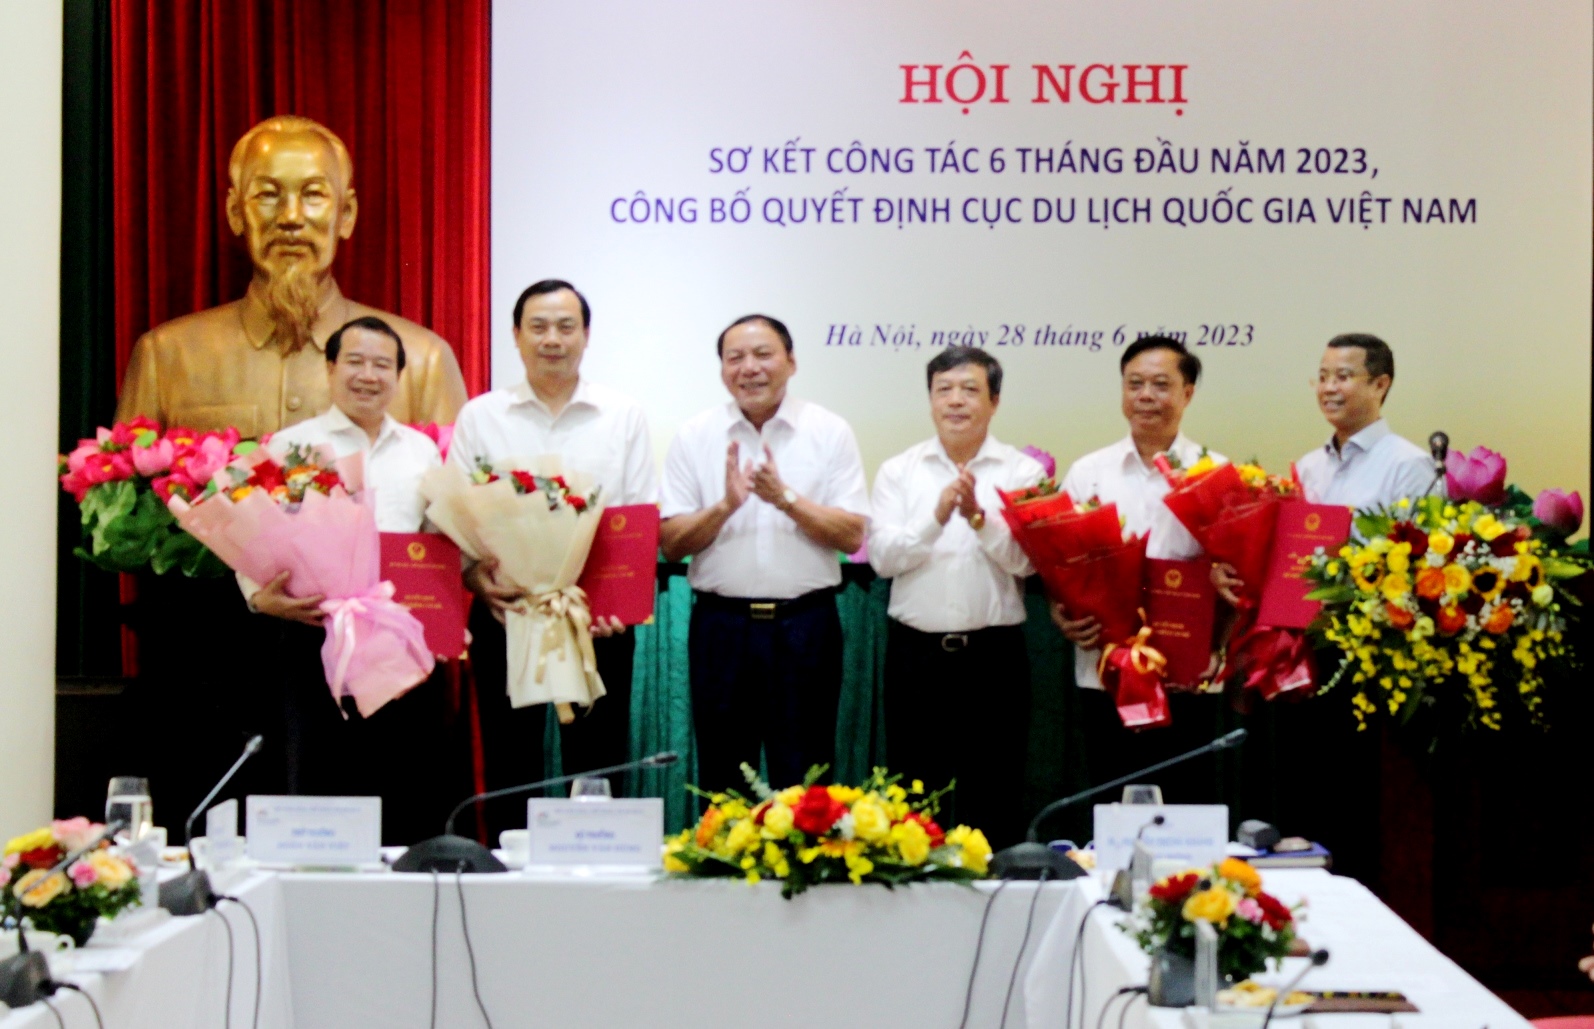  Lãnh đạo Bộ Văn hóa, Thể thao và Du lịch trao Quyết định bổ nhiệm lãnh đạo Cục Du lịch quốc gia Việt Nam